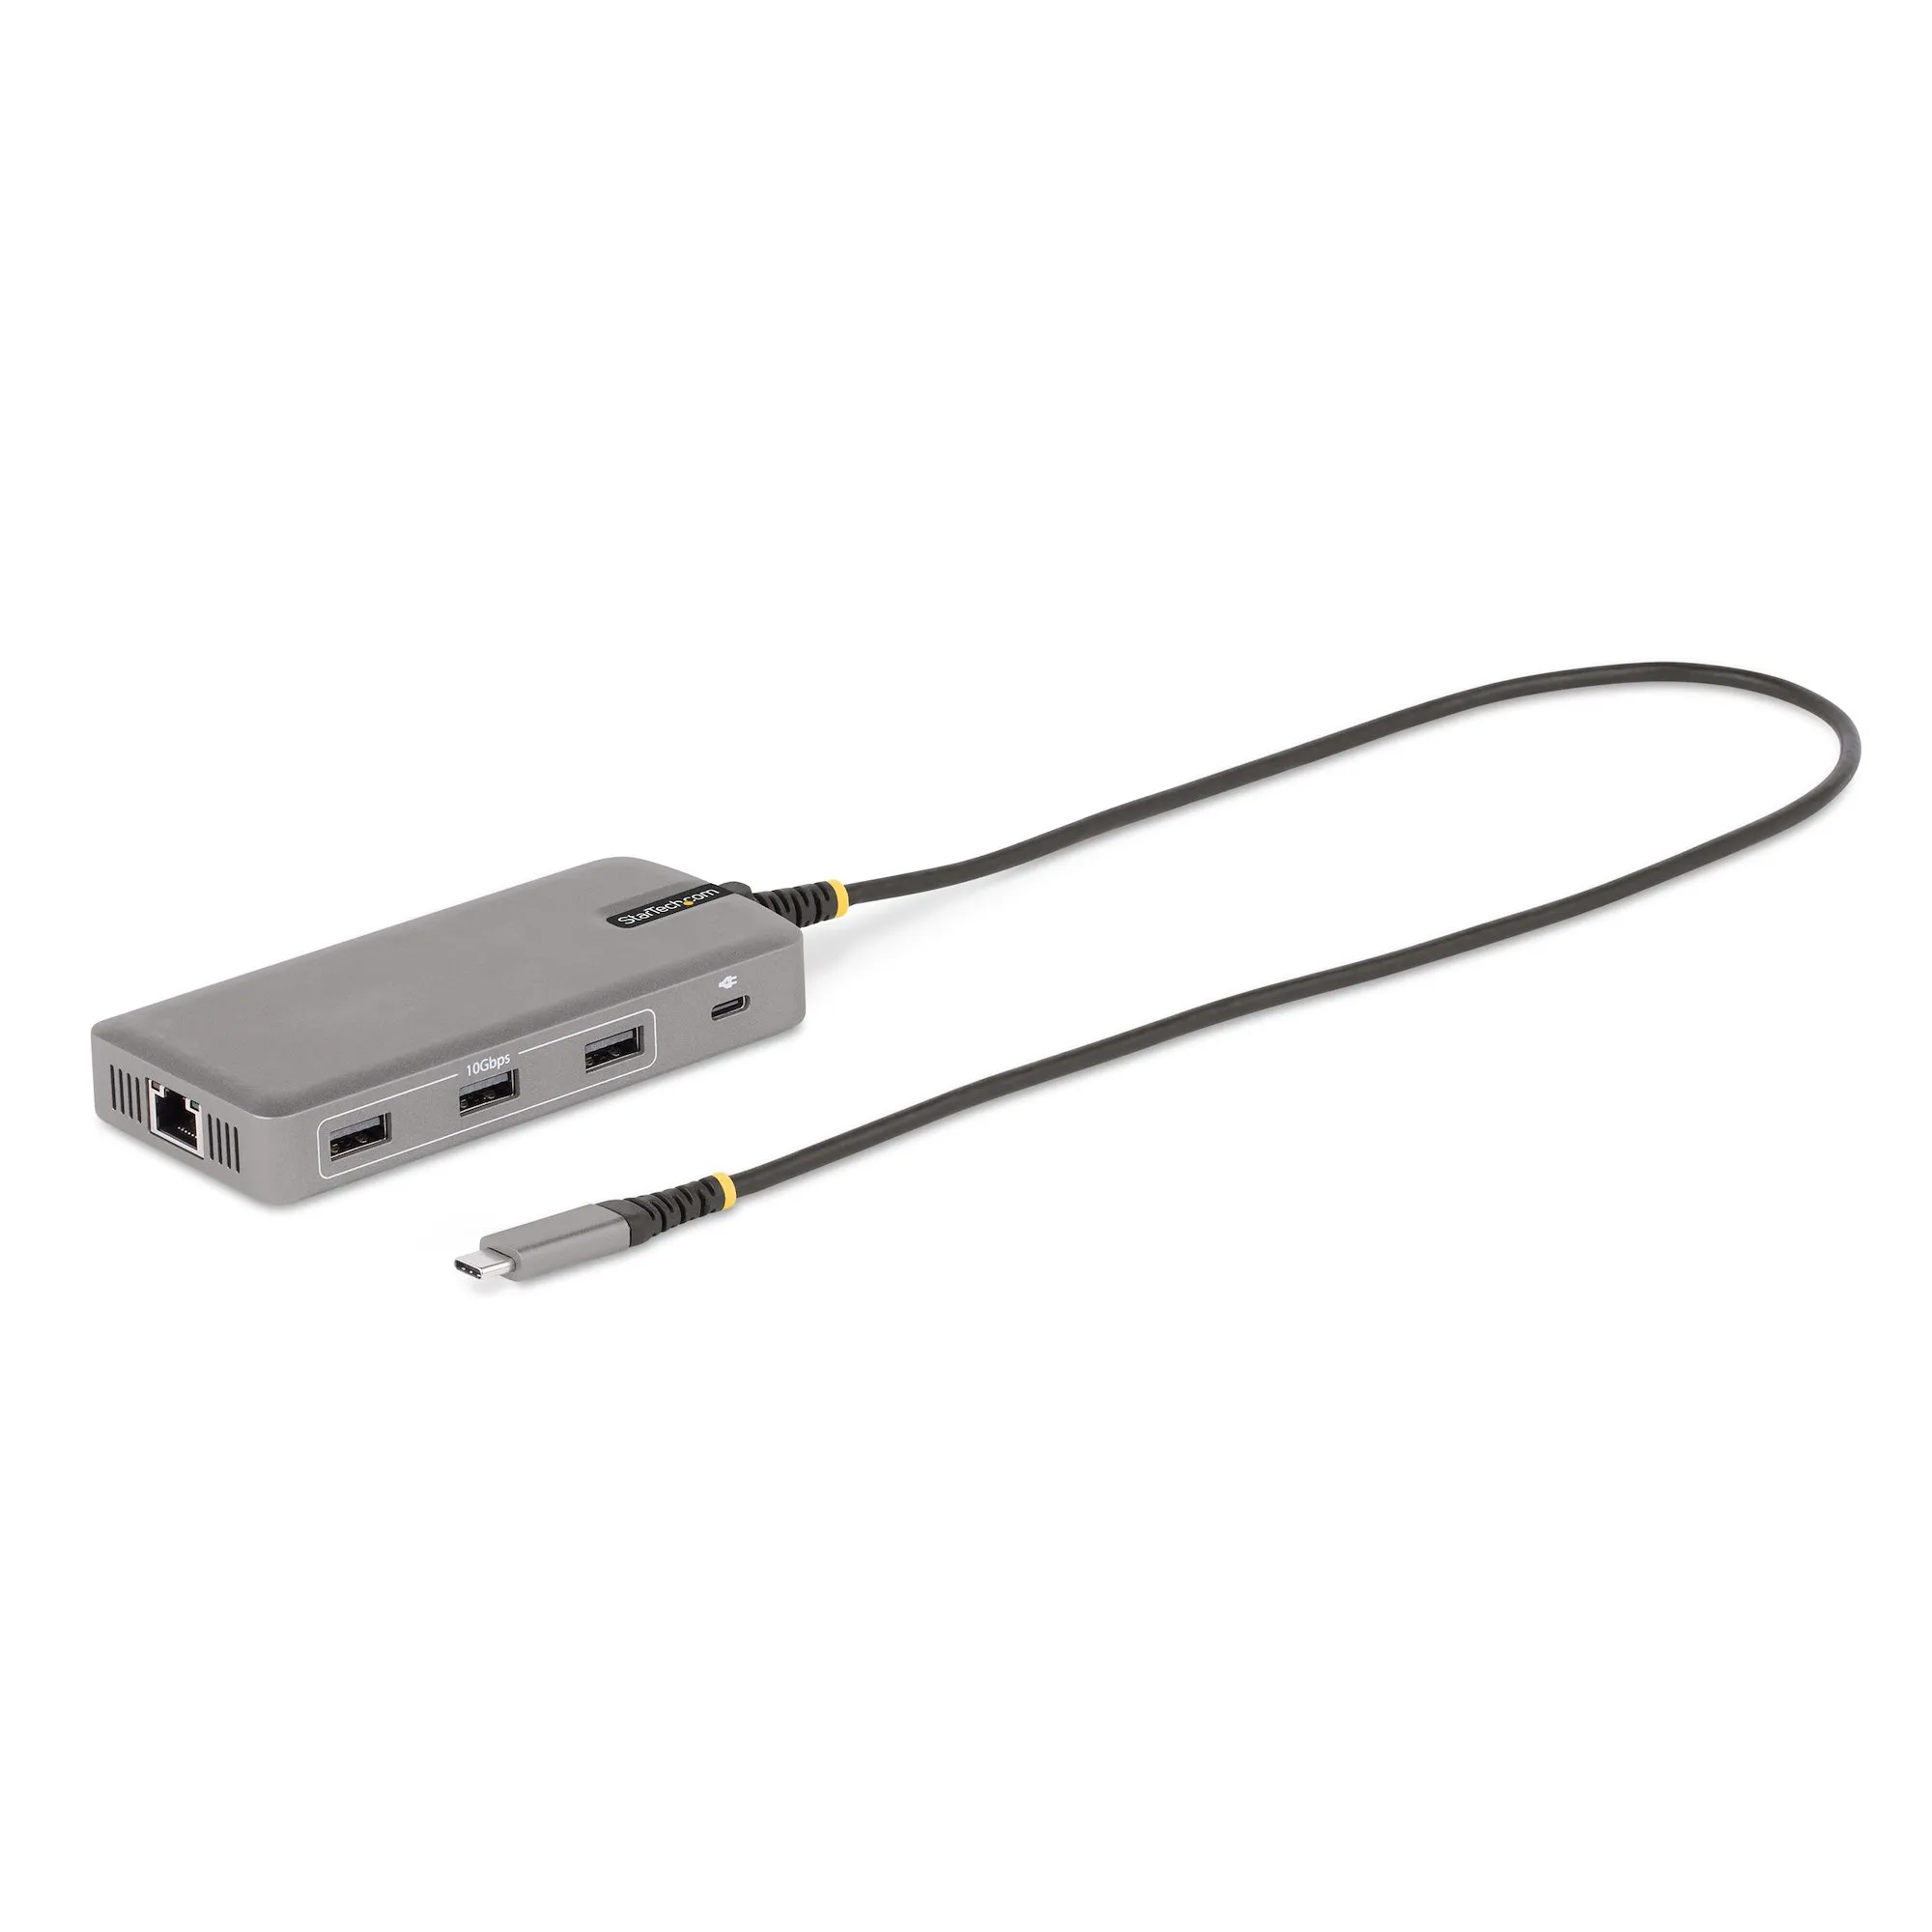 Achat StarTech.com Adaptateur USB-C Triple Moniteur Multiport au meilleur prix